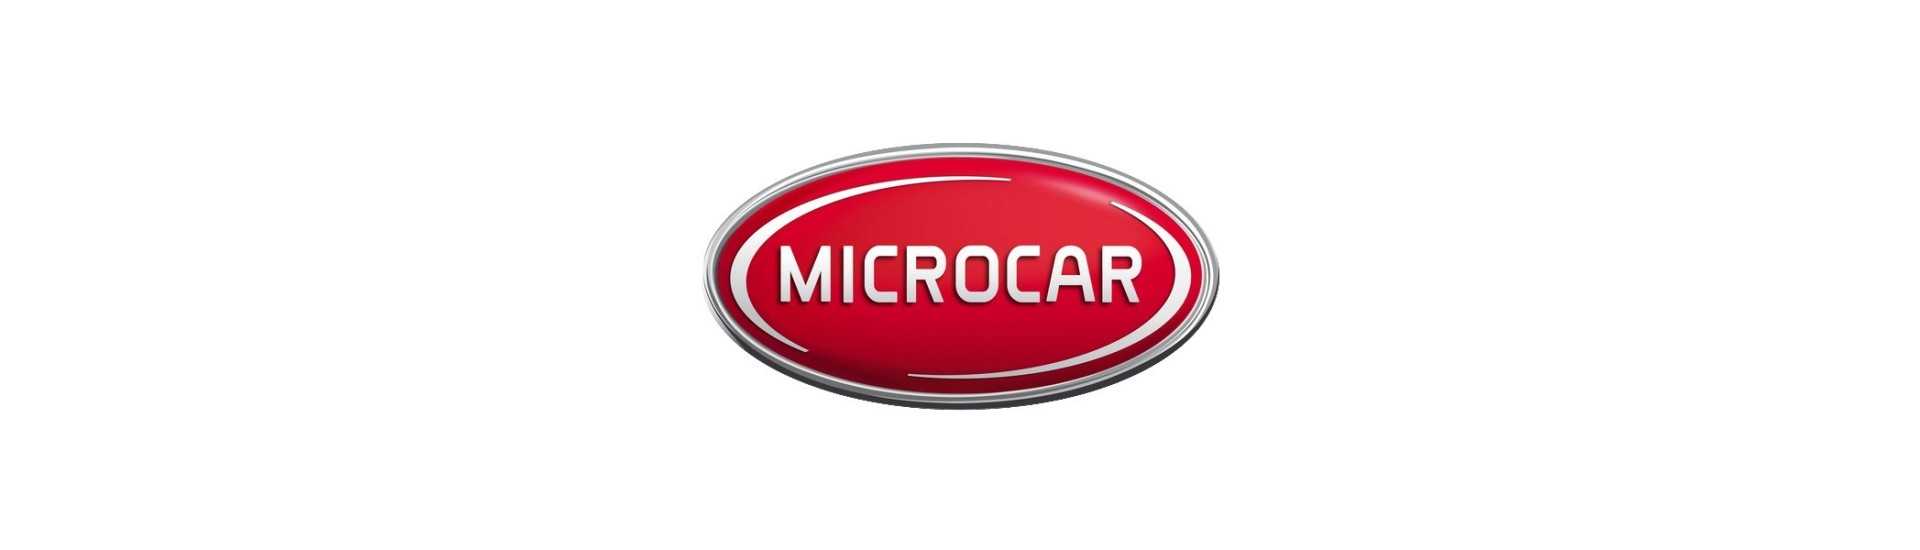 Kroppsarbete till bästa pris för bil utan tillstånd Microcar